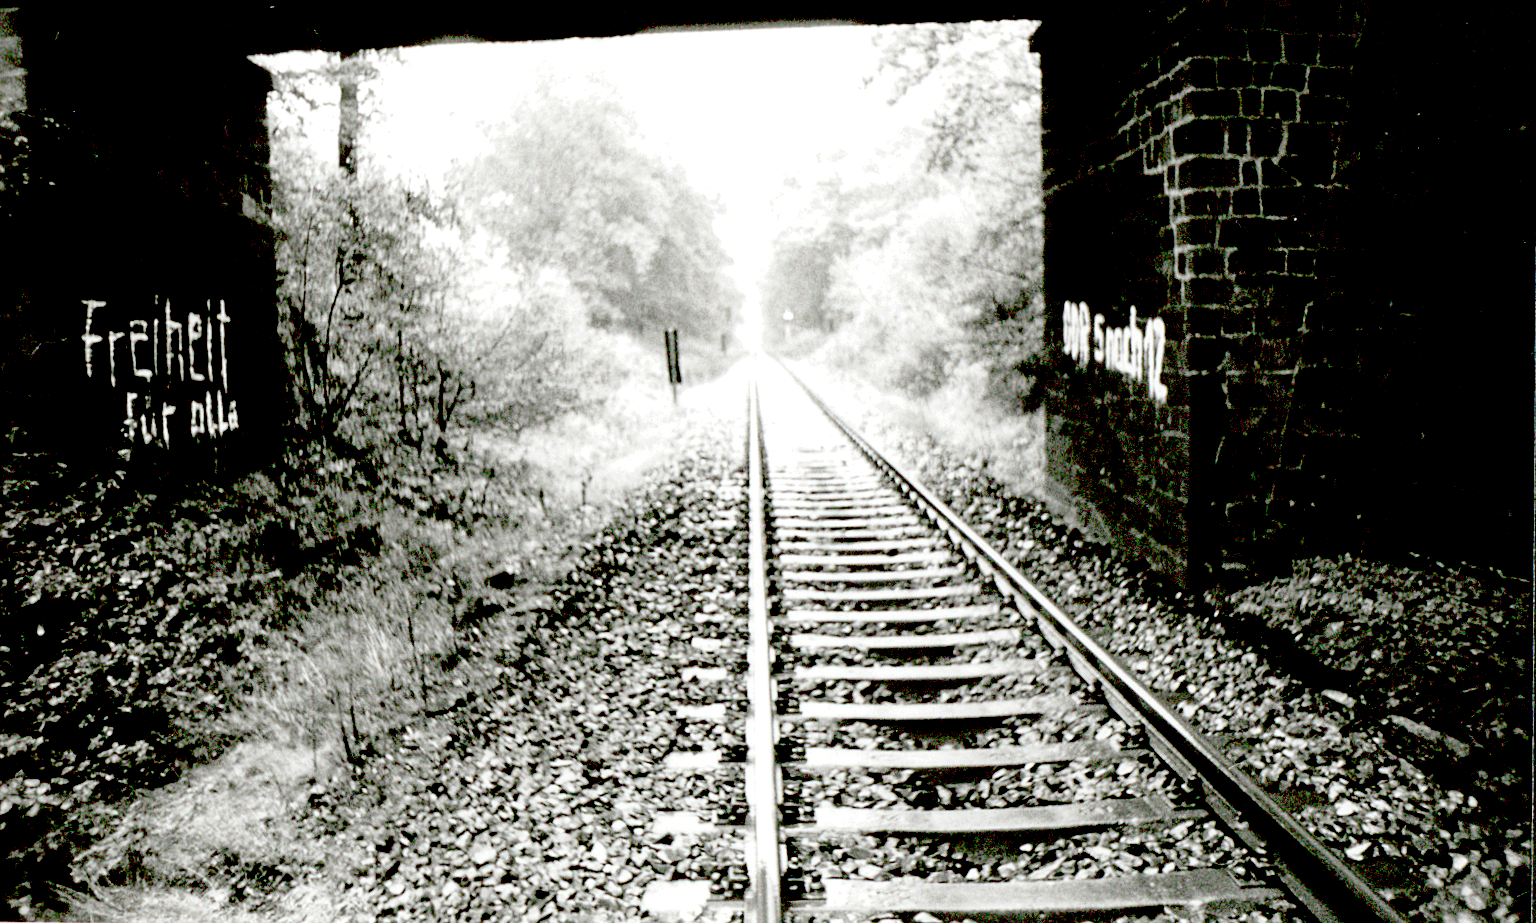 Auf dem schwarzweißen Lichtbild ist ein Gleisstrang abgebildet, der zwischen dichter Vegetation verläuft. Im Vordergrund zwei Brückenpfeiler, zwischen denen die Bahnstrecke verläuft, zu sehen. Der linke Brückenpfeiler wurde mit der Losung 'Freiheit für alle', der rechte Pfeiler mit 'DDR 5 nach 12' in weißer Farbe beschriftet.